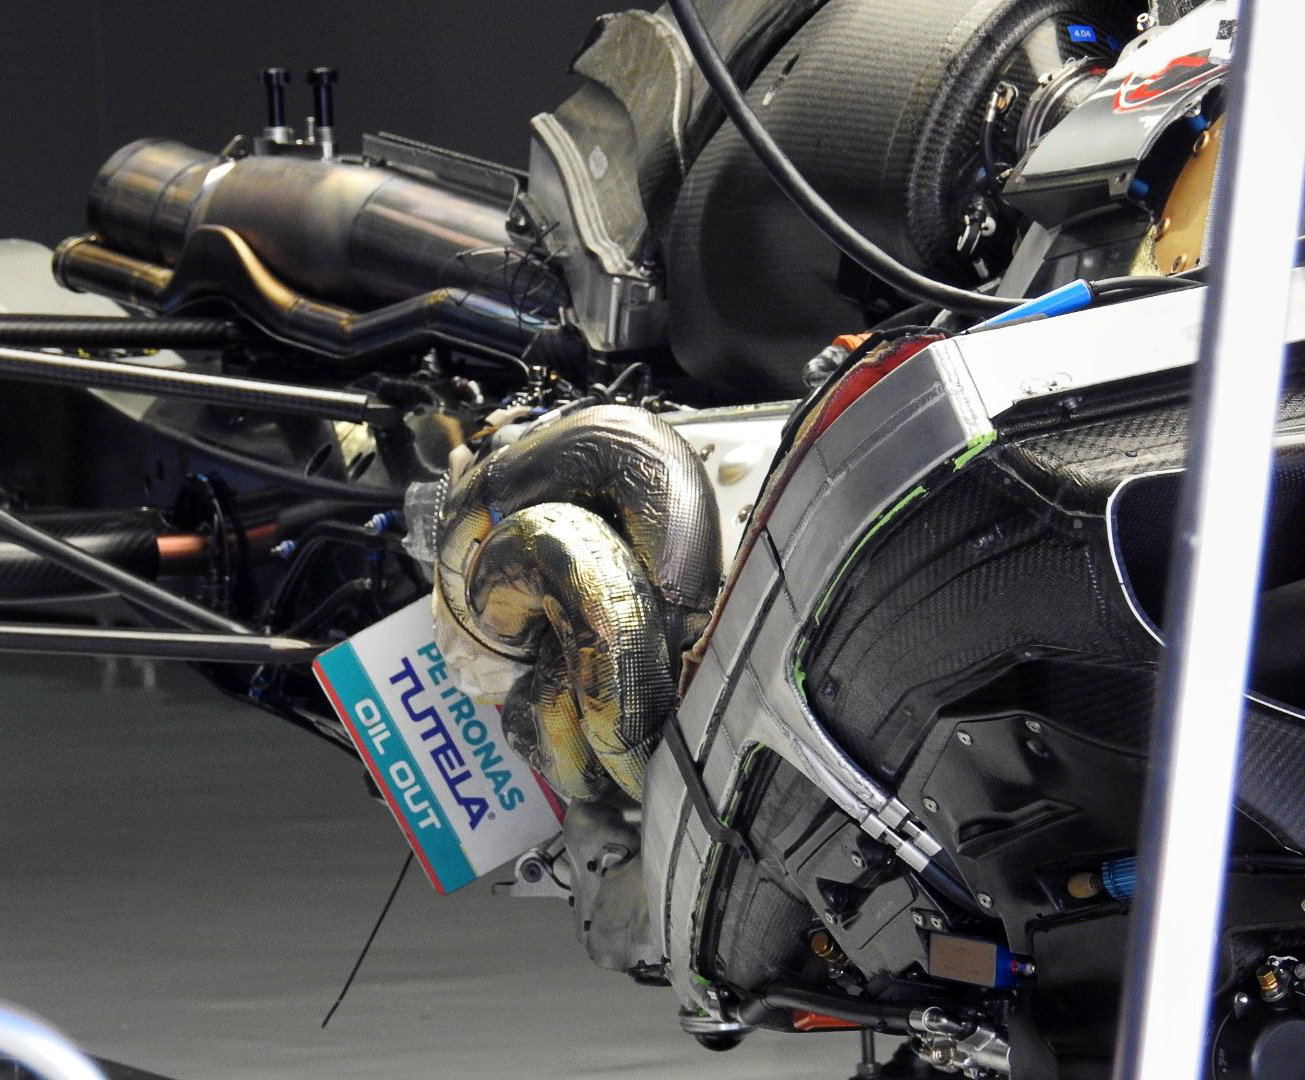 Williams je přesvědčený o tom, že Mercedes svým zákazníkům poskytuje stejný hardware i software jako svému továrnímu týmu